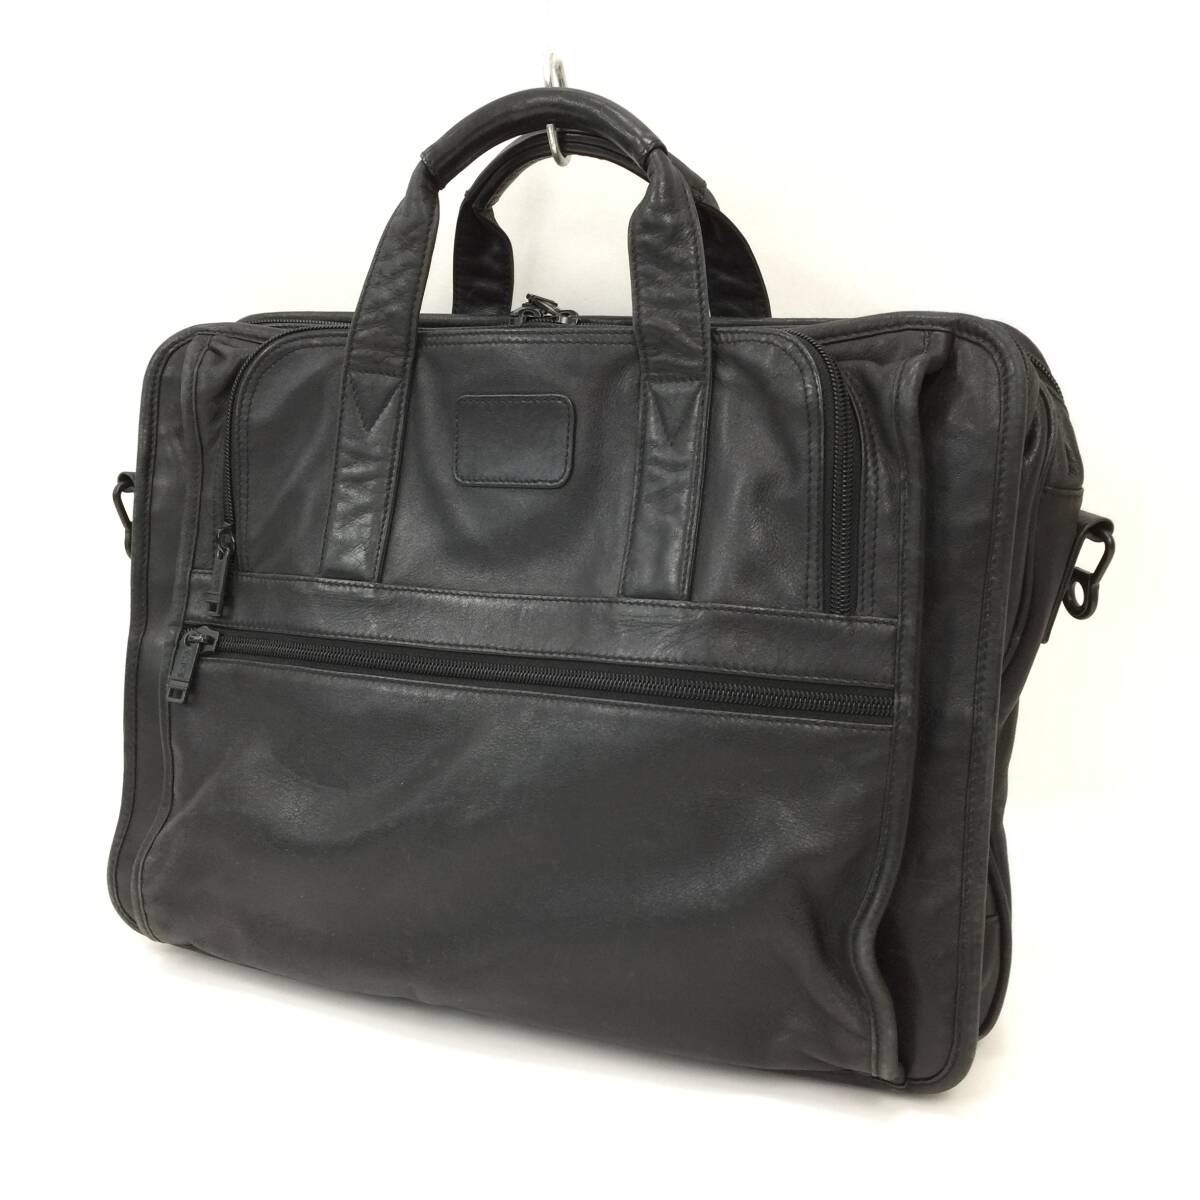 183 TUMI トゥミ レザー ビジネス バッグ 書類鞄 ブリーフケース トート 通勤 本革 皮革 バッグ A4 メンズ ブラック 黒 ストラップ欠品の画像1